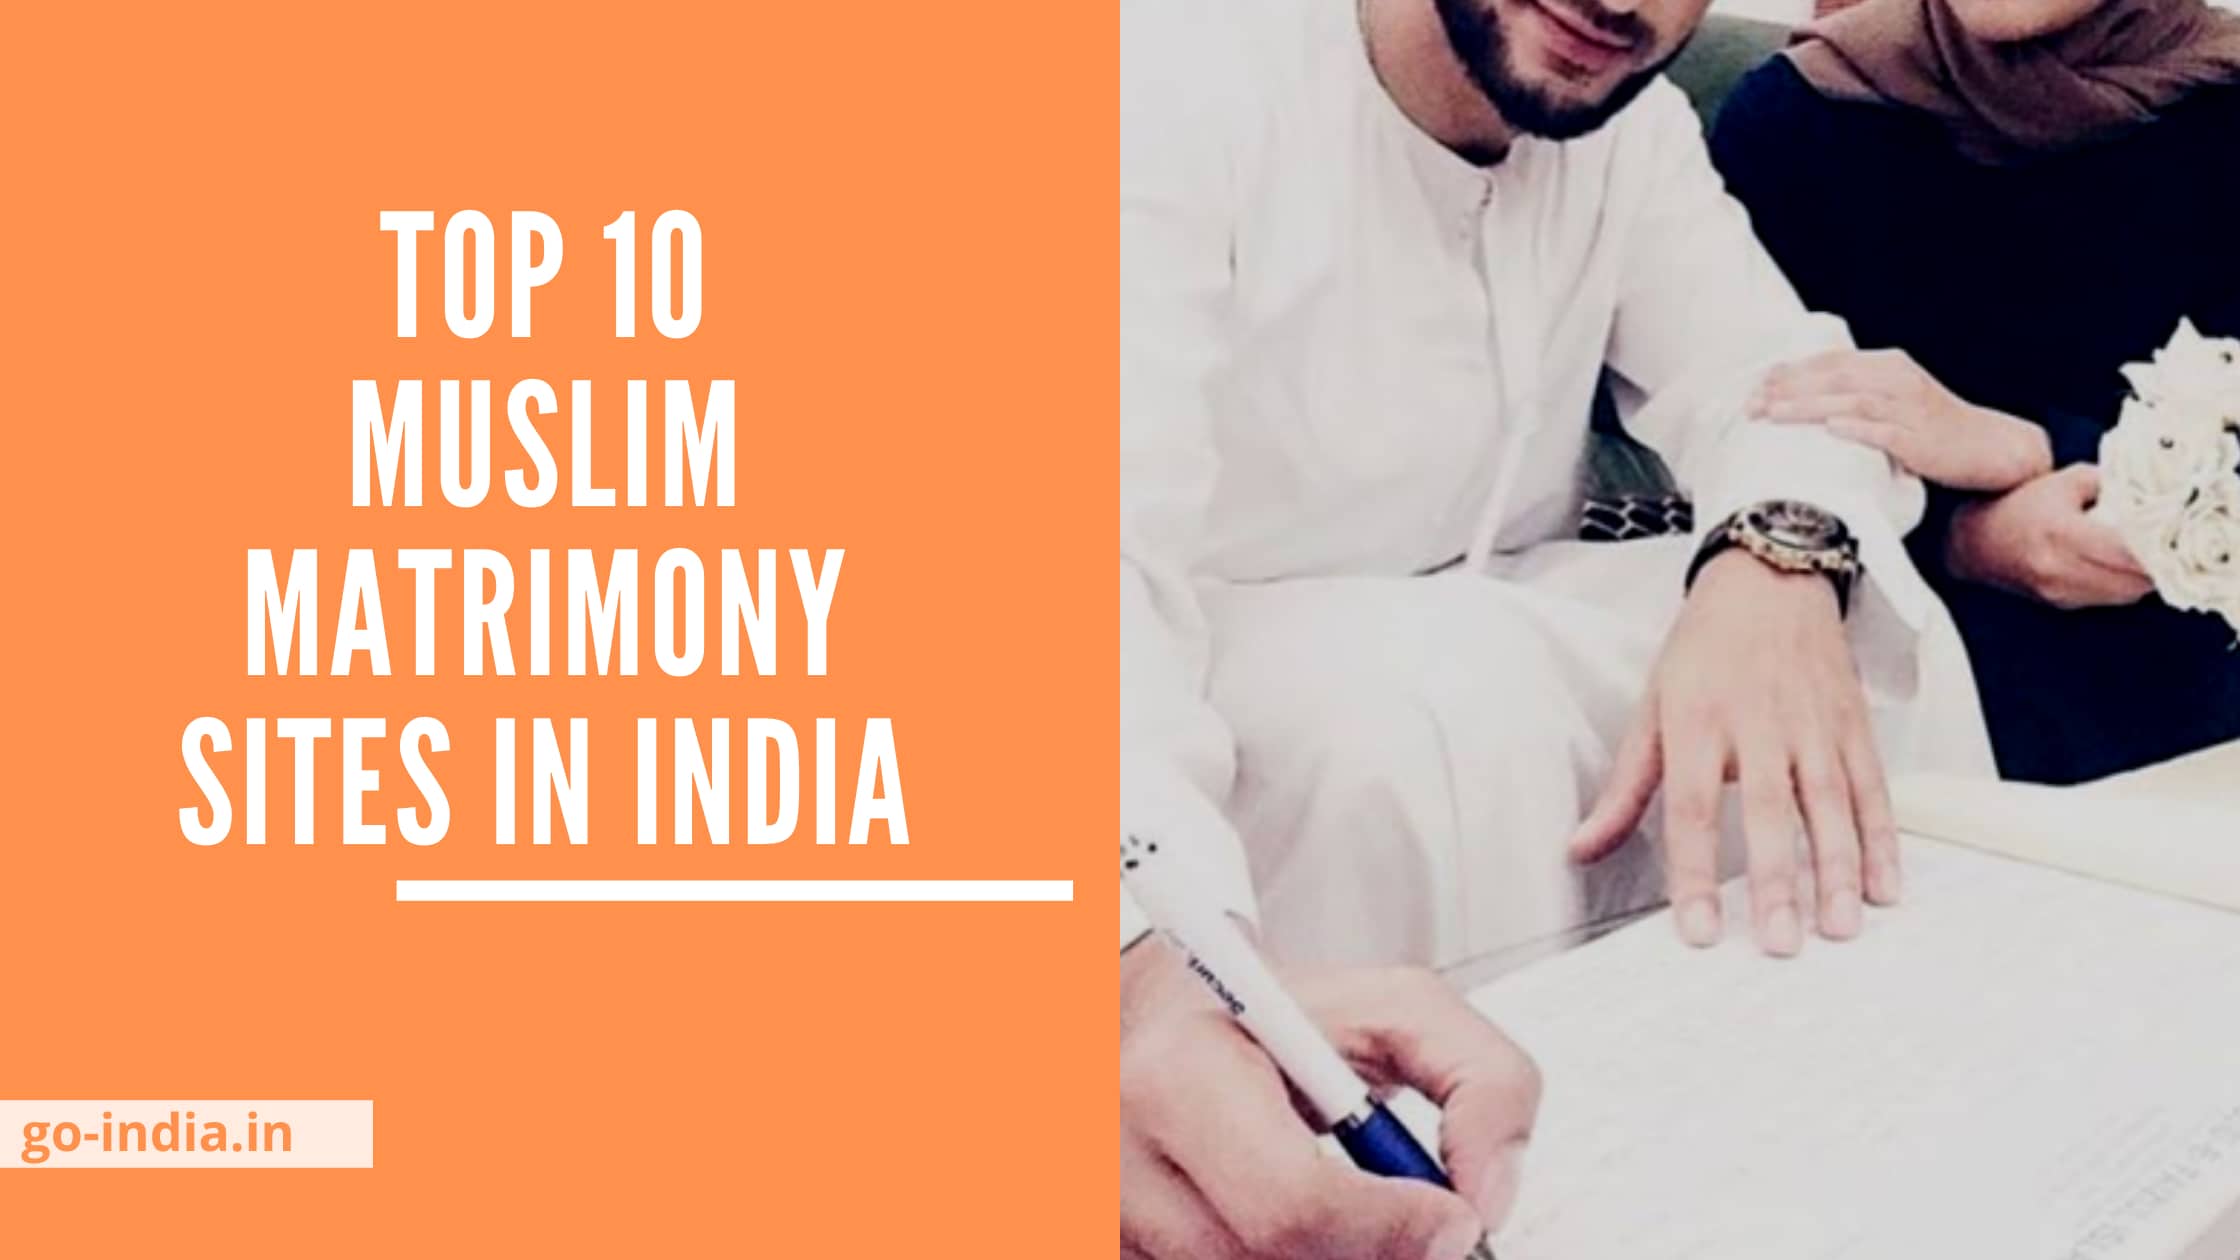 Muslim Matrimony Sites in India